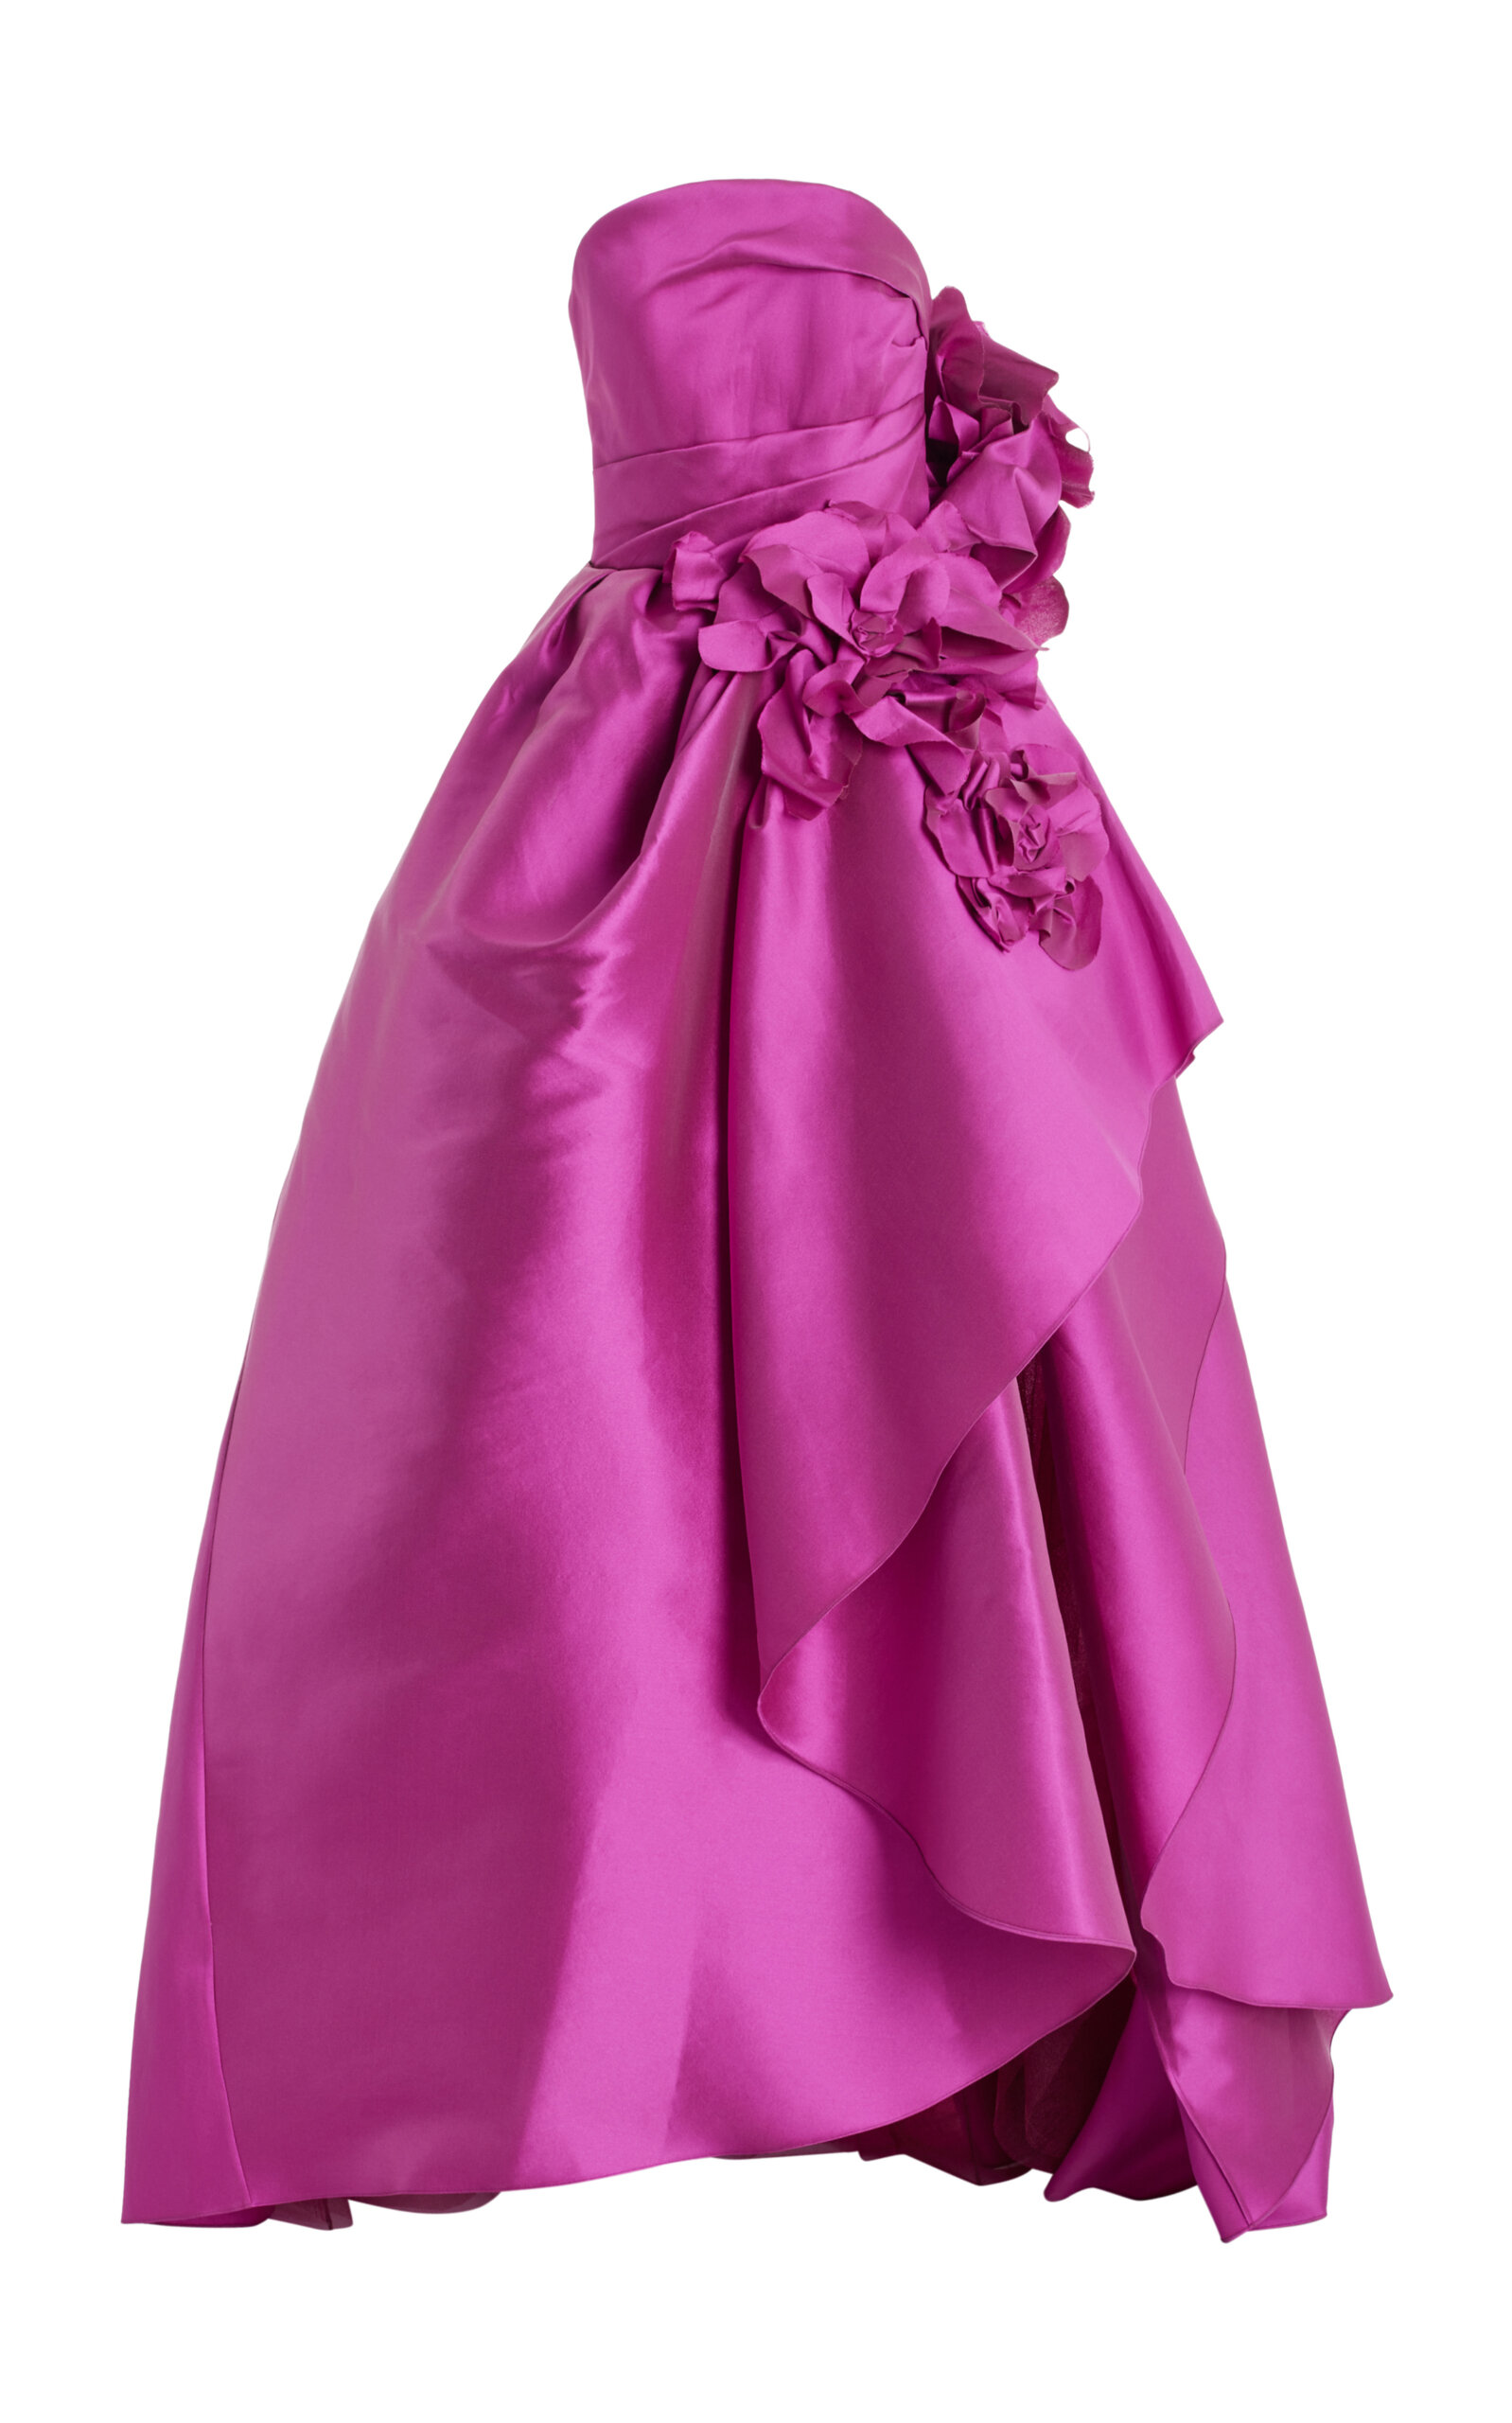 Floral-Appliquéd Satin Ball Gown